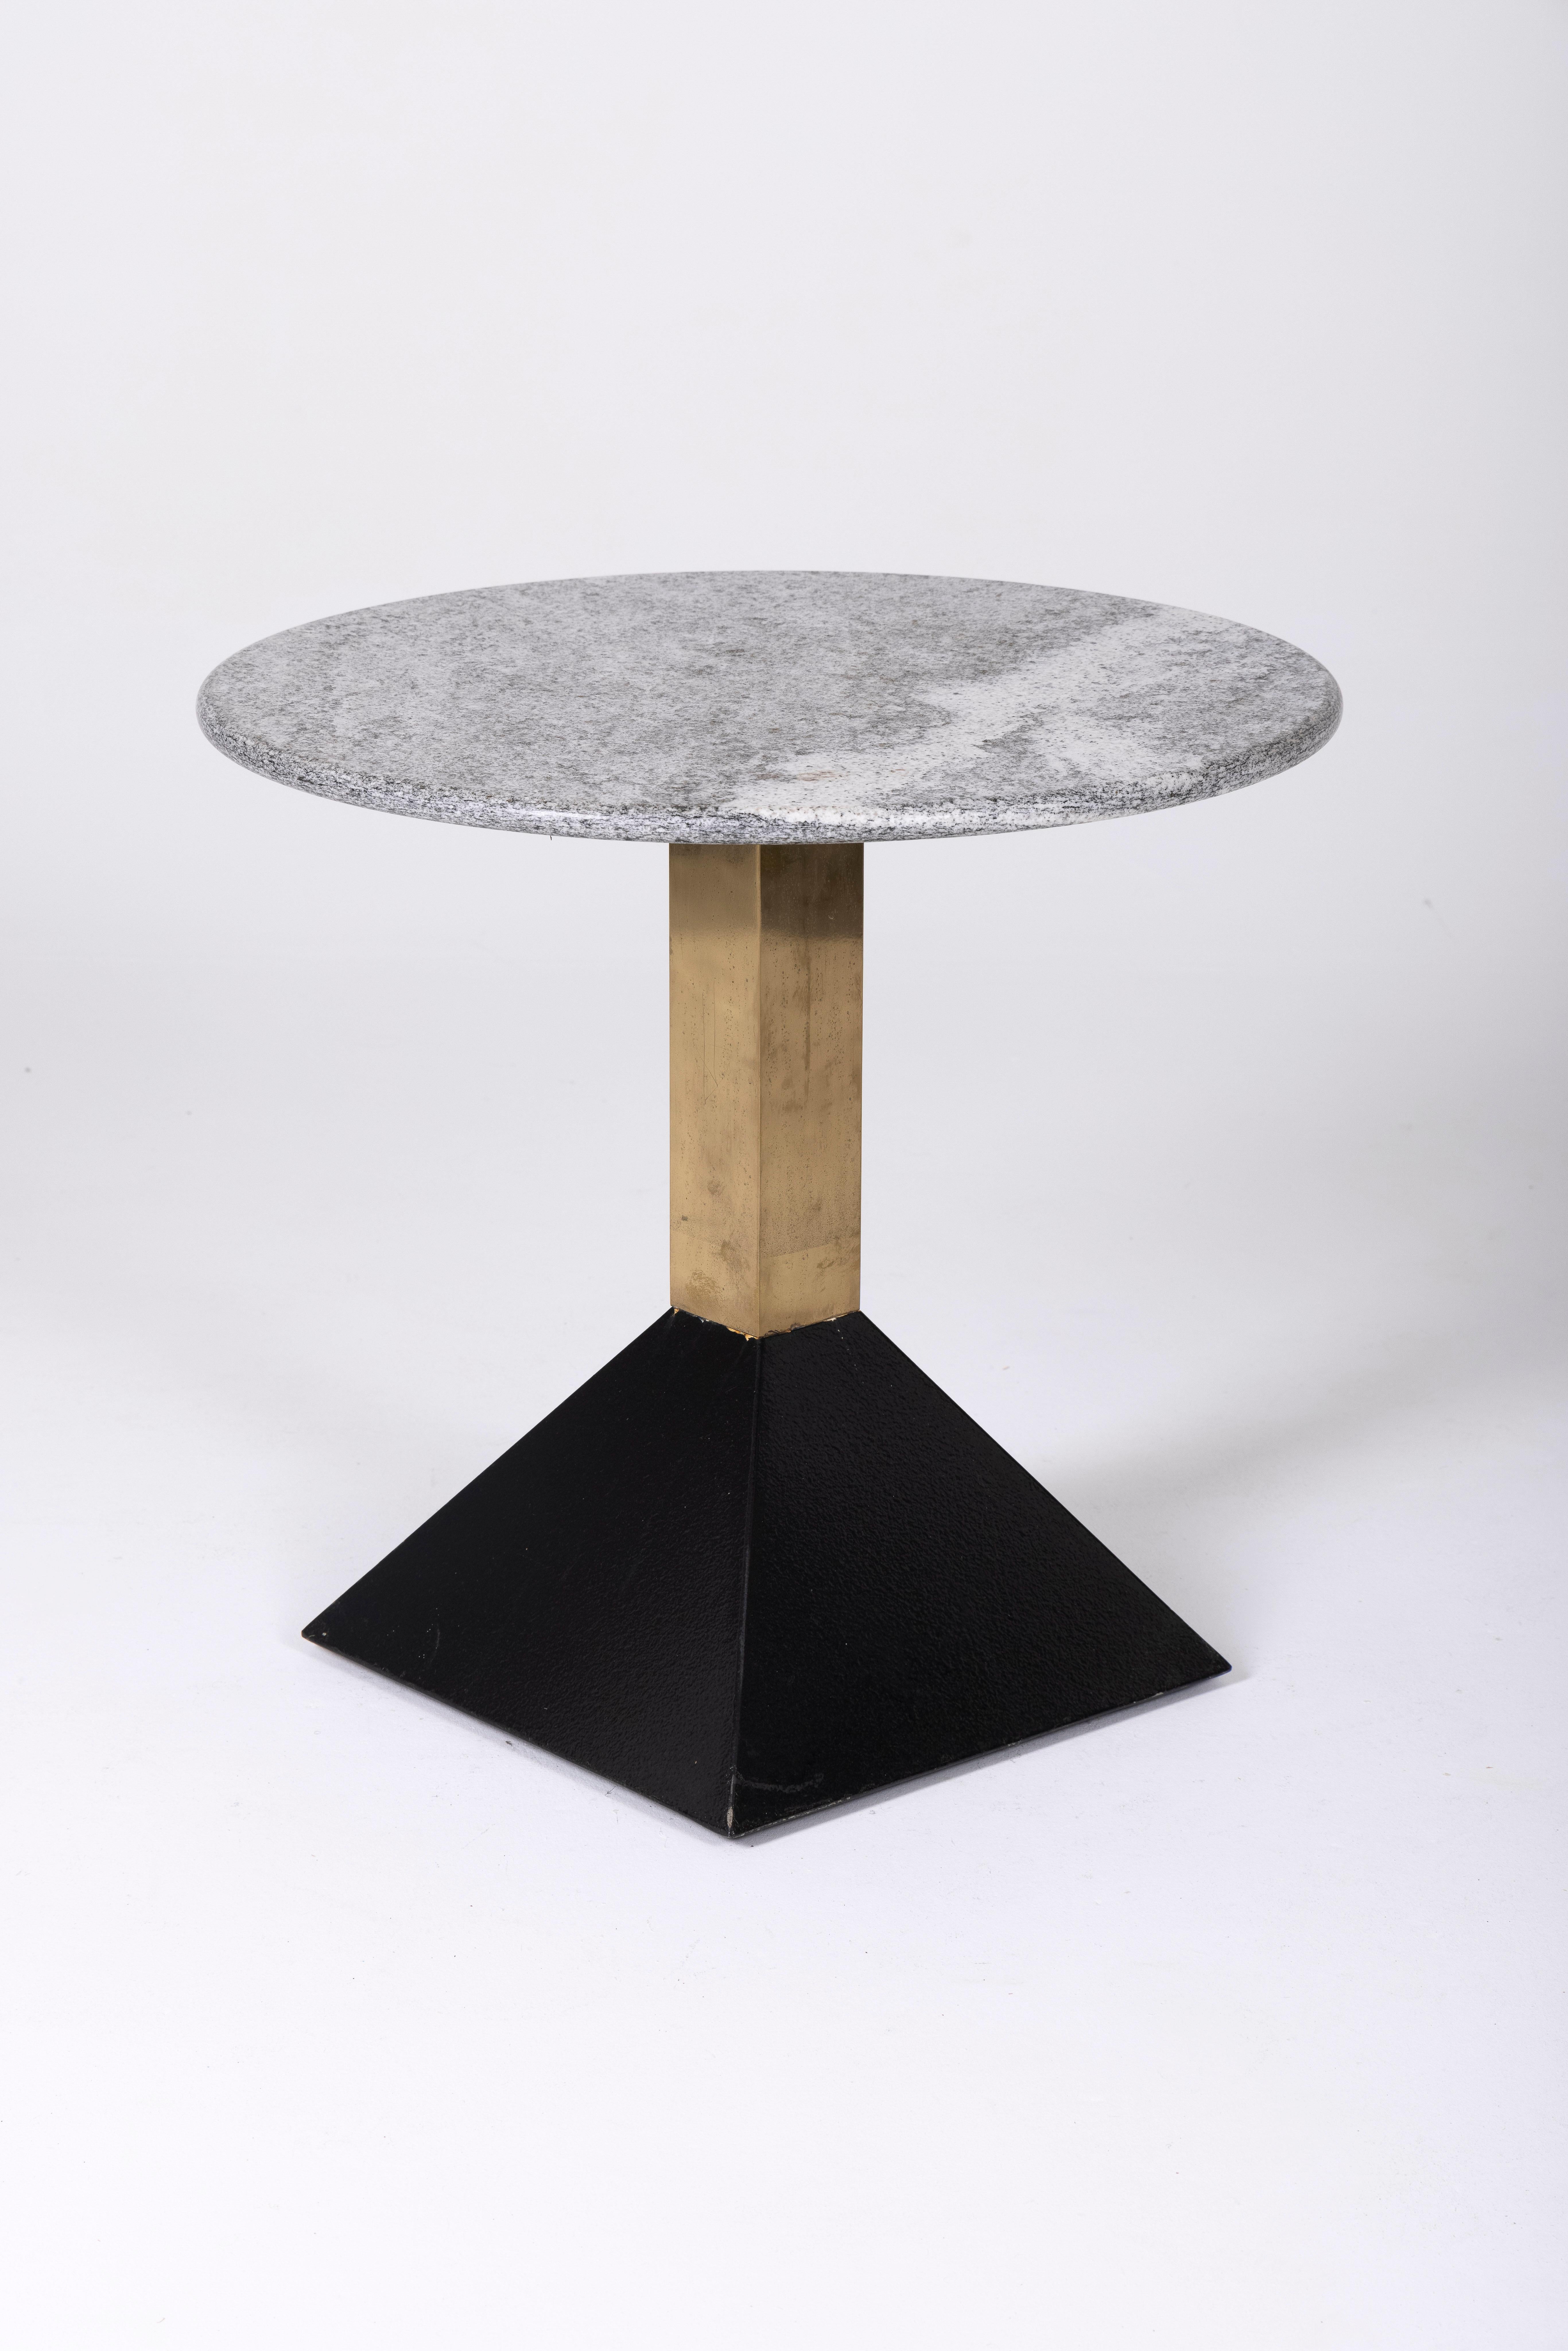 Table d'appoint en marbre et laiton des années 1980. Le plateau est en marbre gris et la base est en métal laqué noir et en laiton. Cette table d'appoint s'harmonise avec les meubles de style Memphis.
DV148